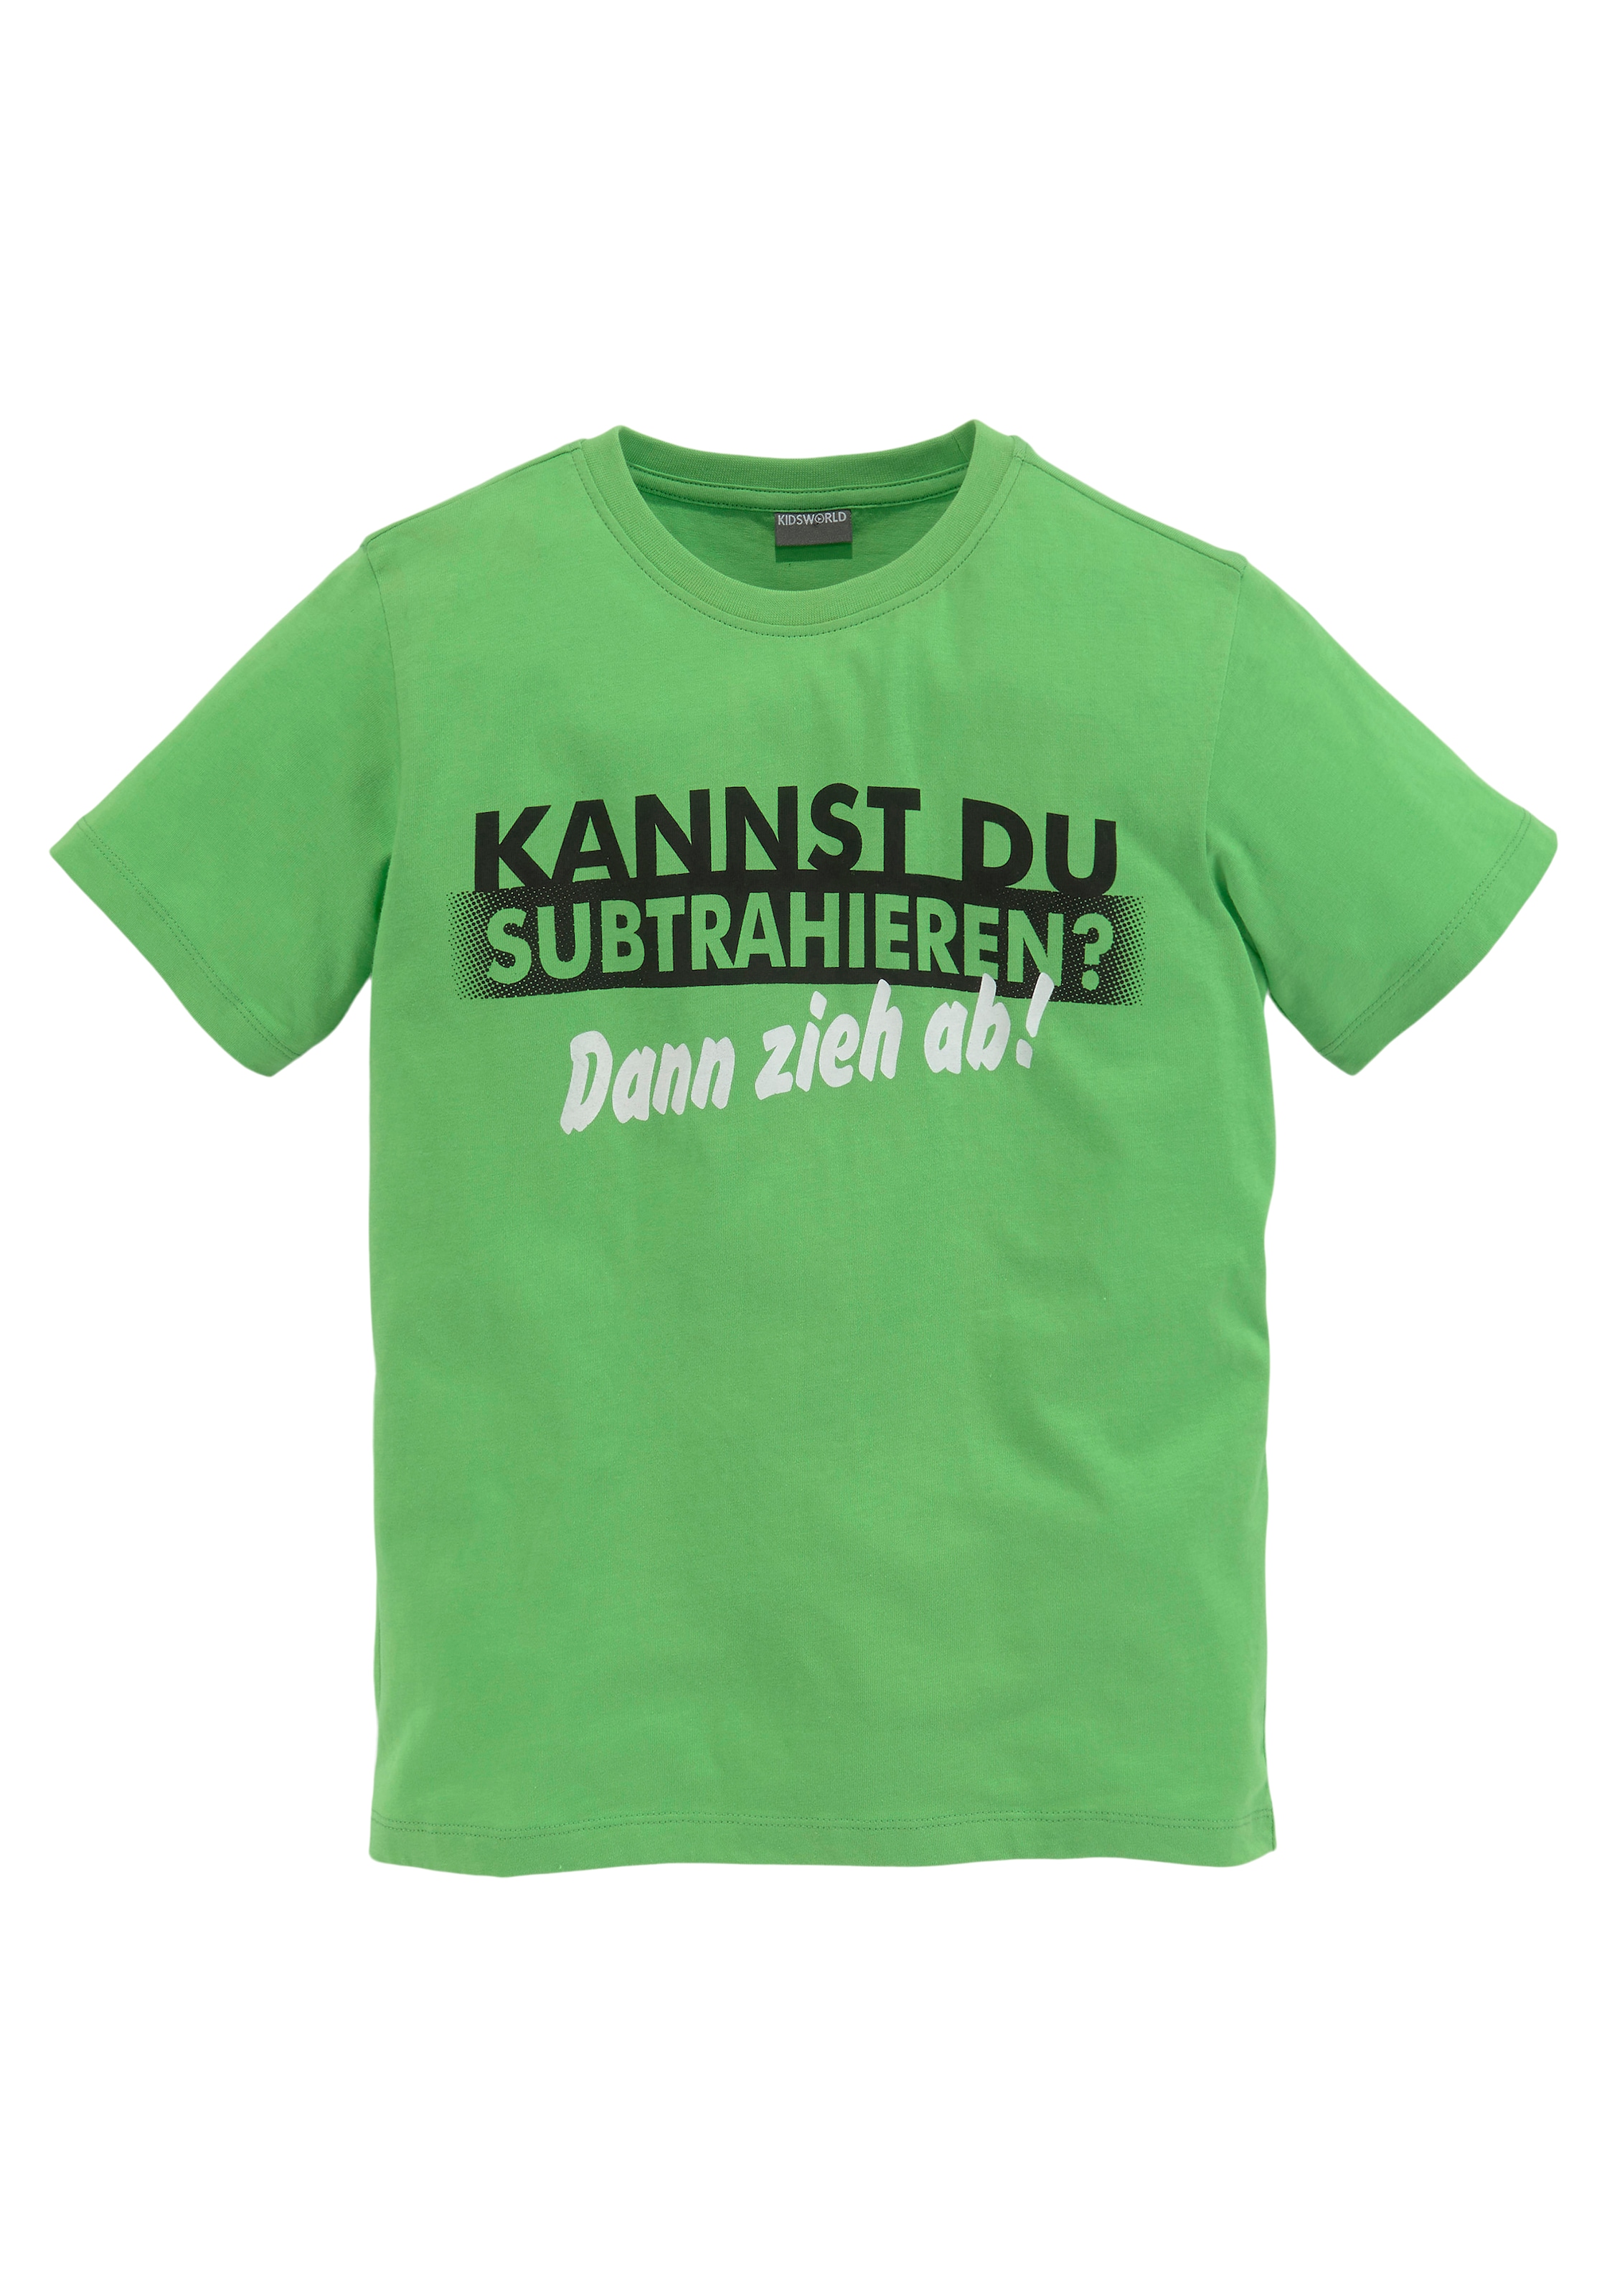 KIDSWORLD T-Shirt Spruch SUBTRAHIEREN?«, DU »KANNST bei